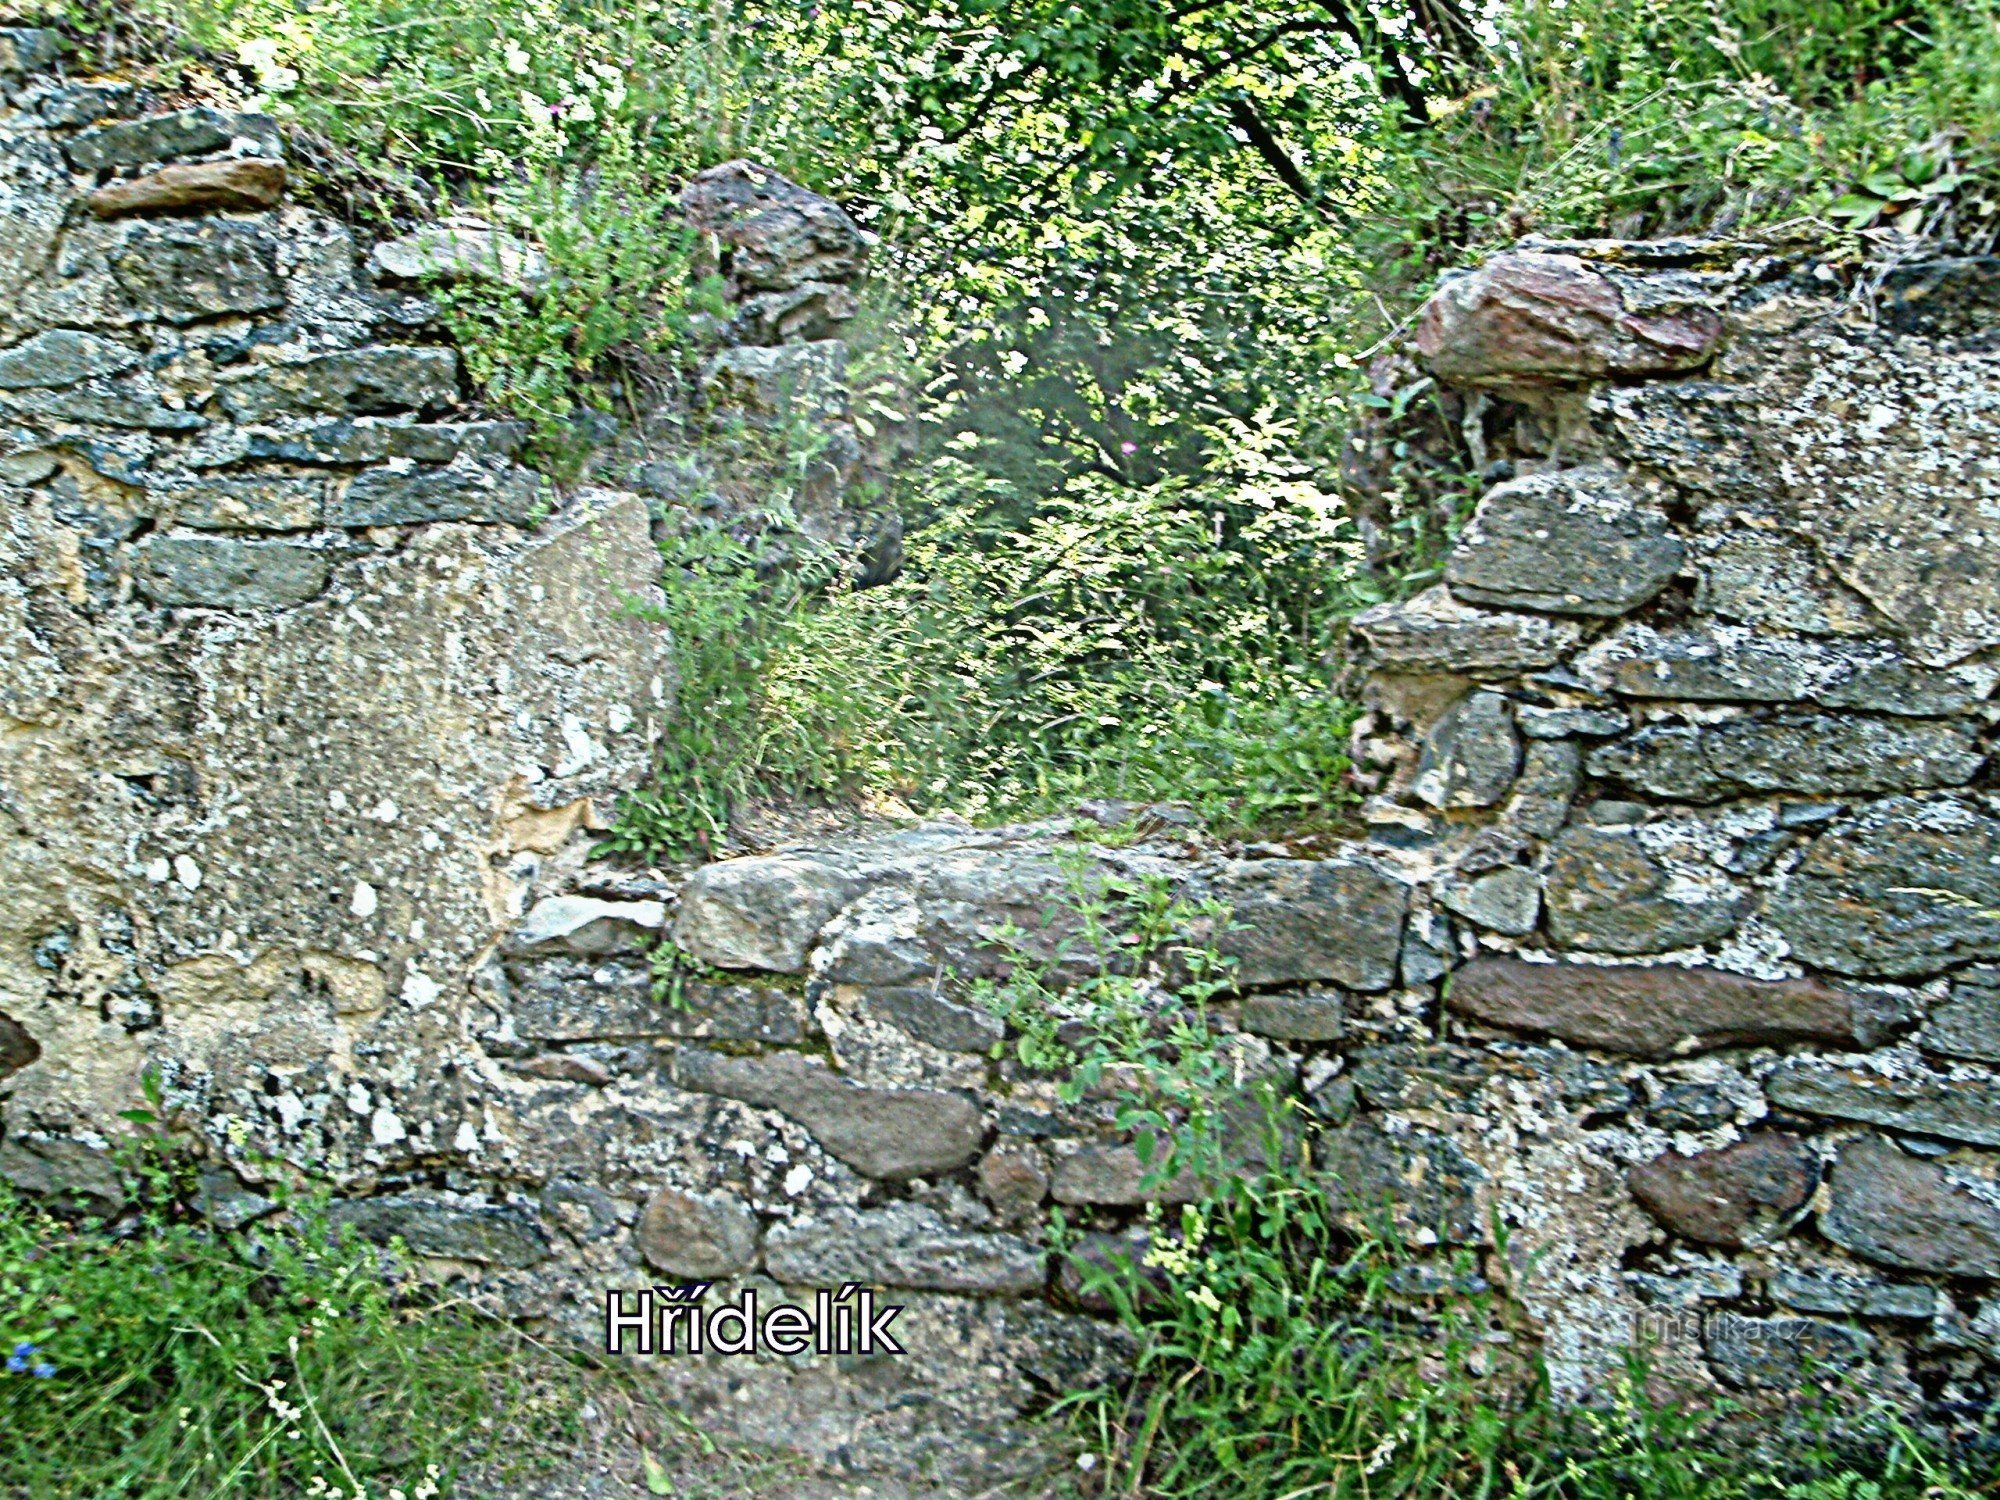 Blíževedly - Hřídelík várának romjai